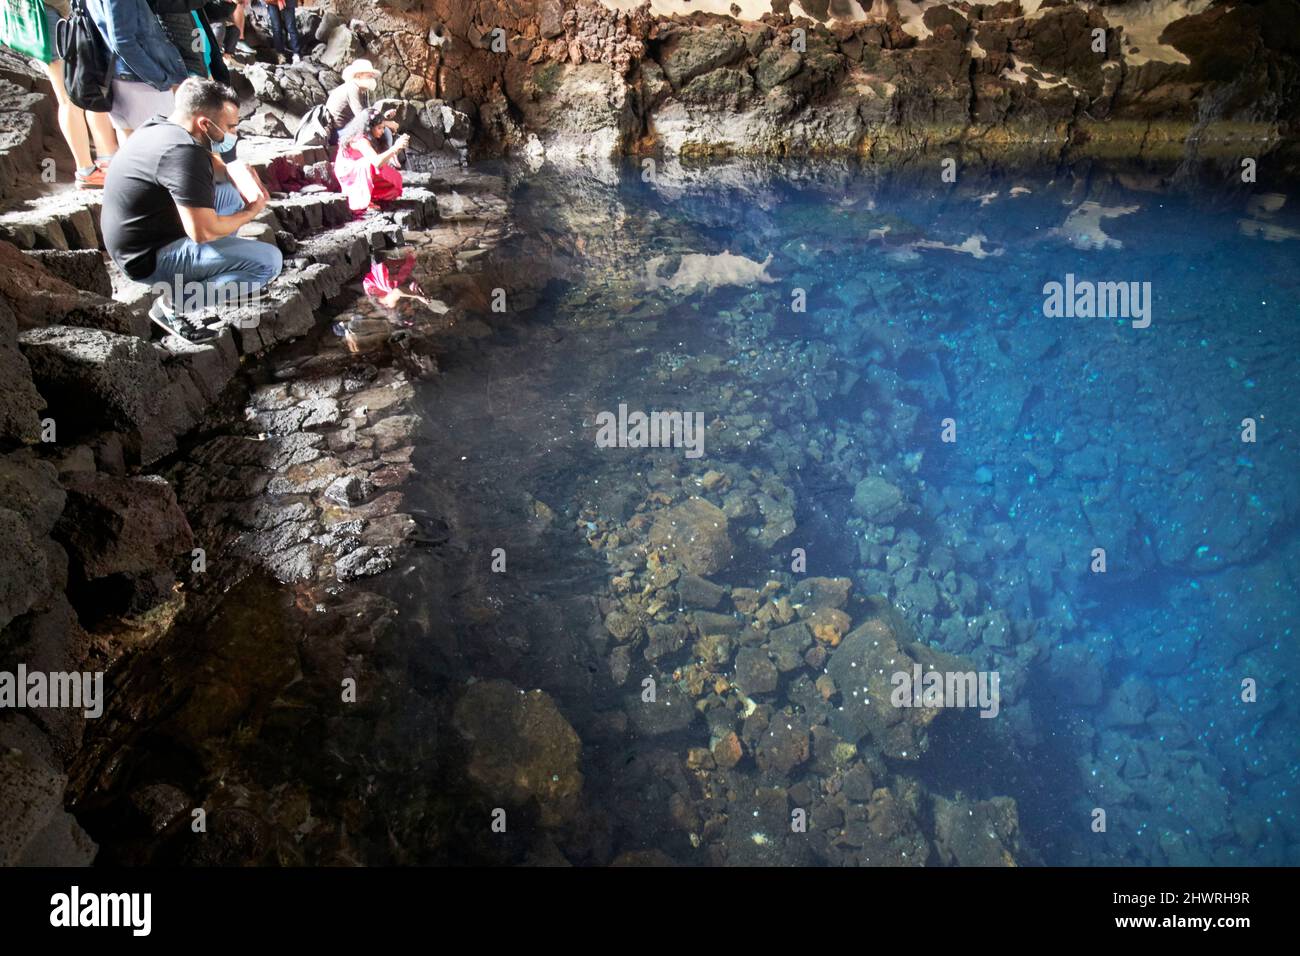 Touristen sitzen am Rand des Lavatunnels mit Salzwasser-Lagunen-See in jameos del agua lanzarote, kanarische Inseln, spanien die weißen Flecken sind die einzigartigen blin Stockfoto